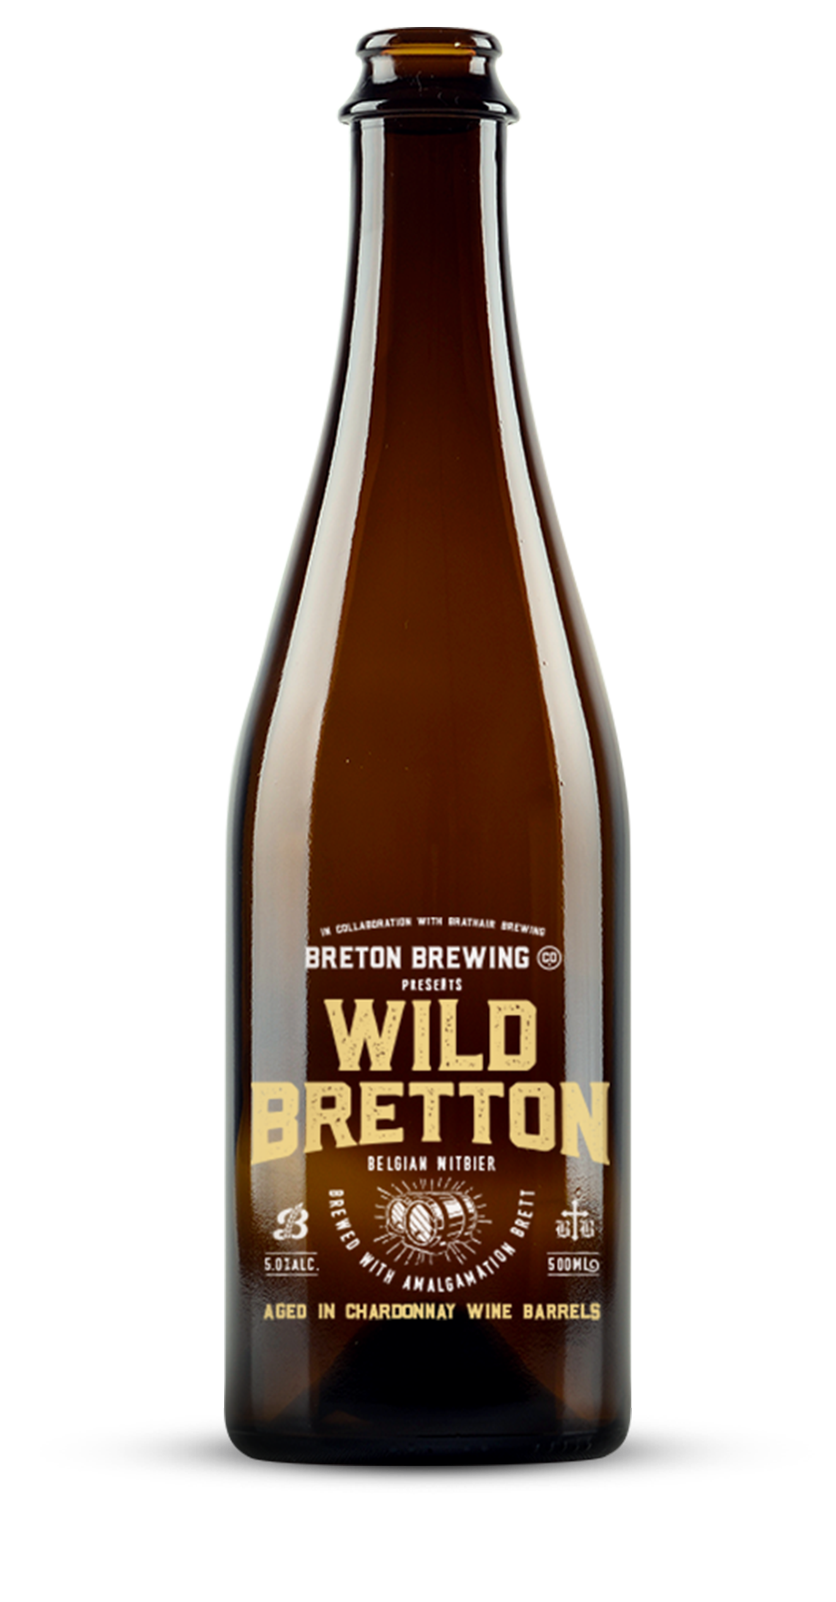 Wild Bretton Belgian Witbier - Chardonnay